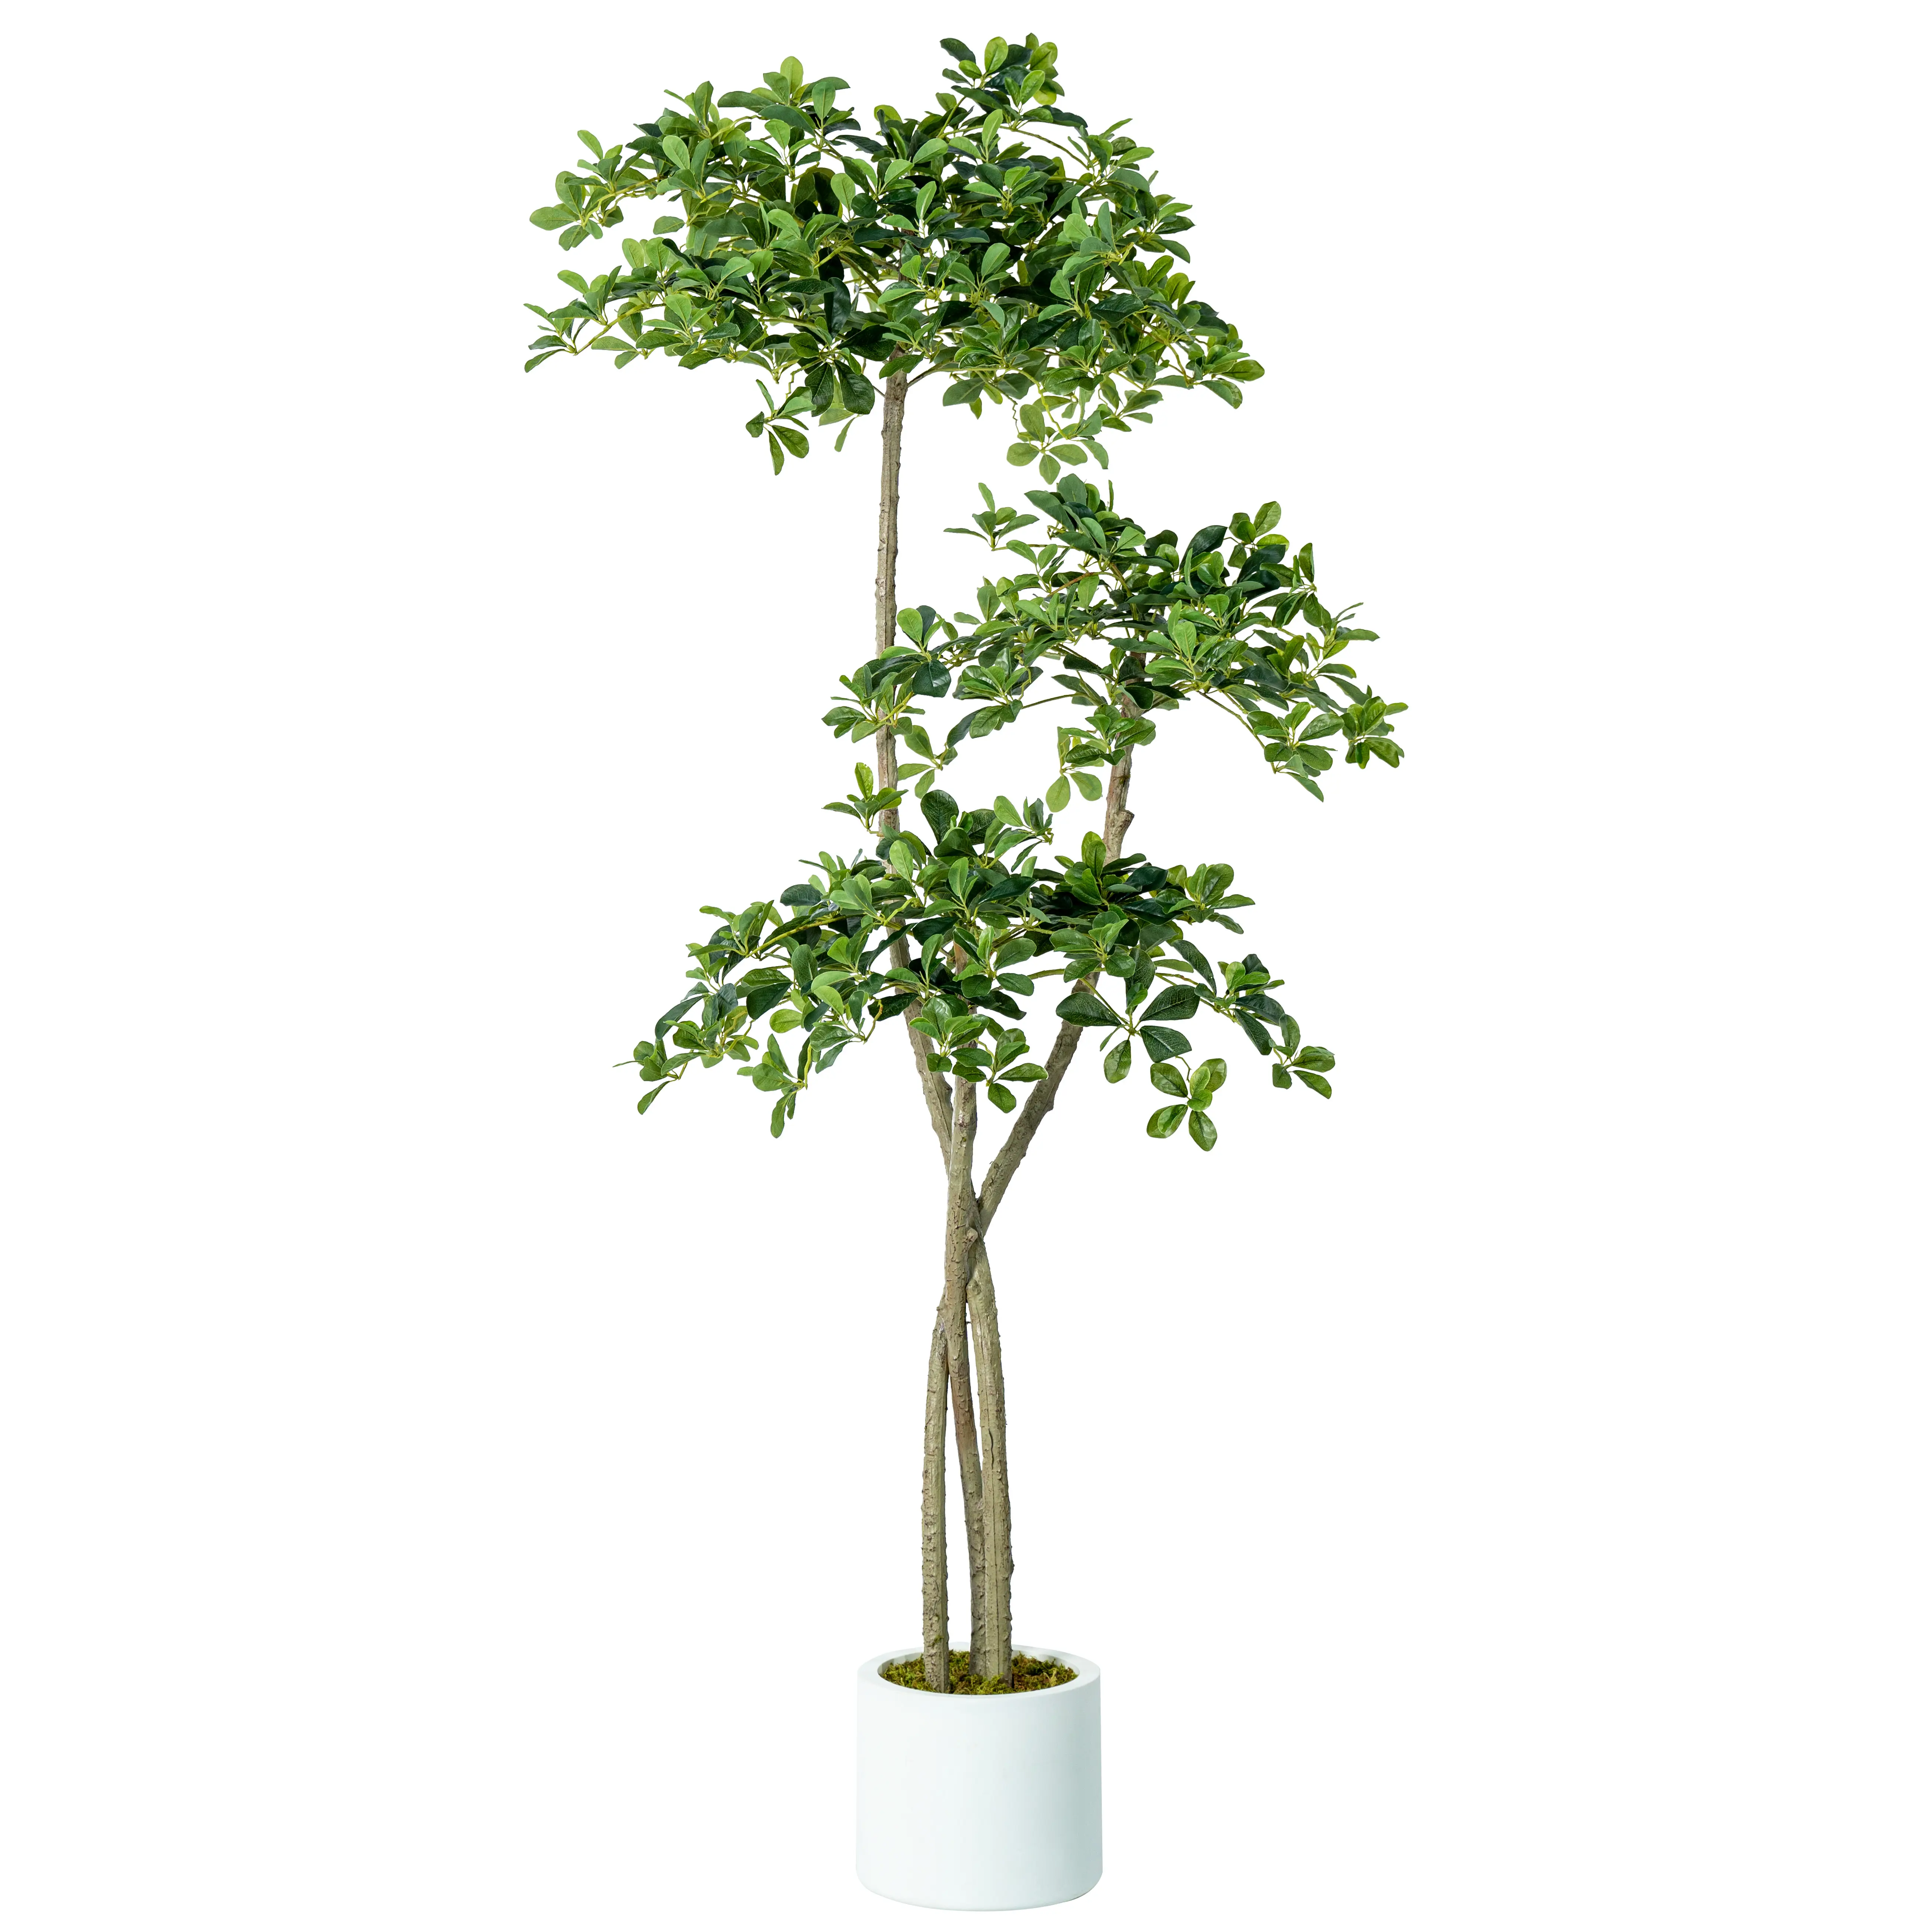 أفضل بيع نباتات شجرة زيتون داخلية بتصميم جديد نبات زيتون صناعي ديكوري داخلي شجرة زيتون صناعية للبيع